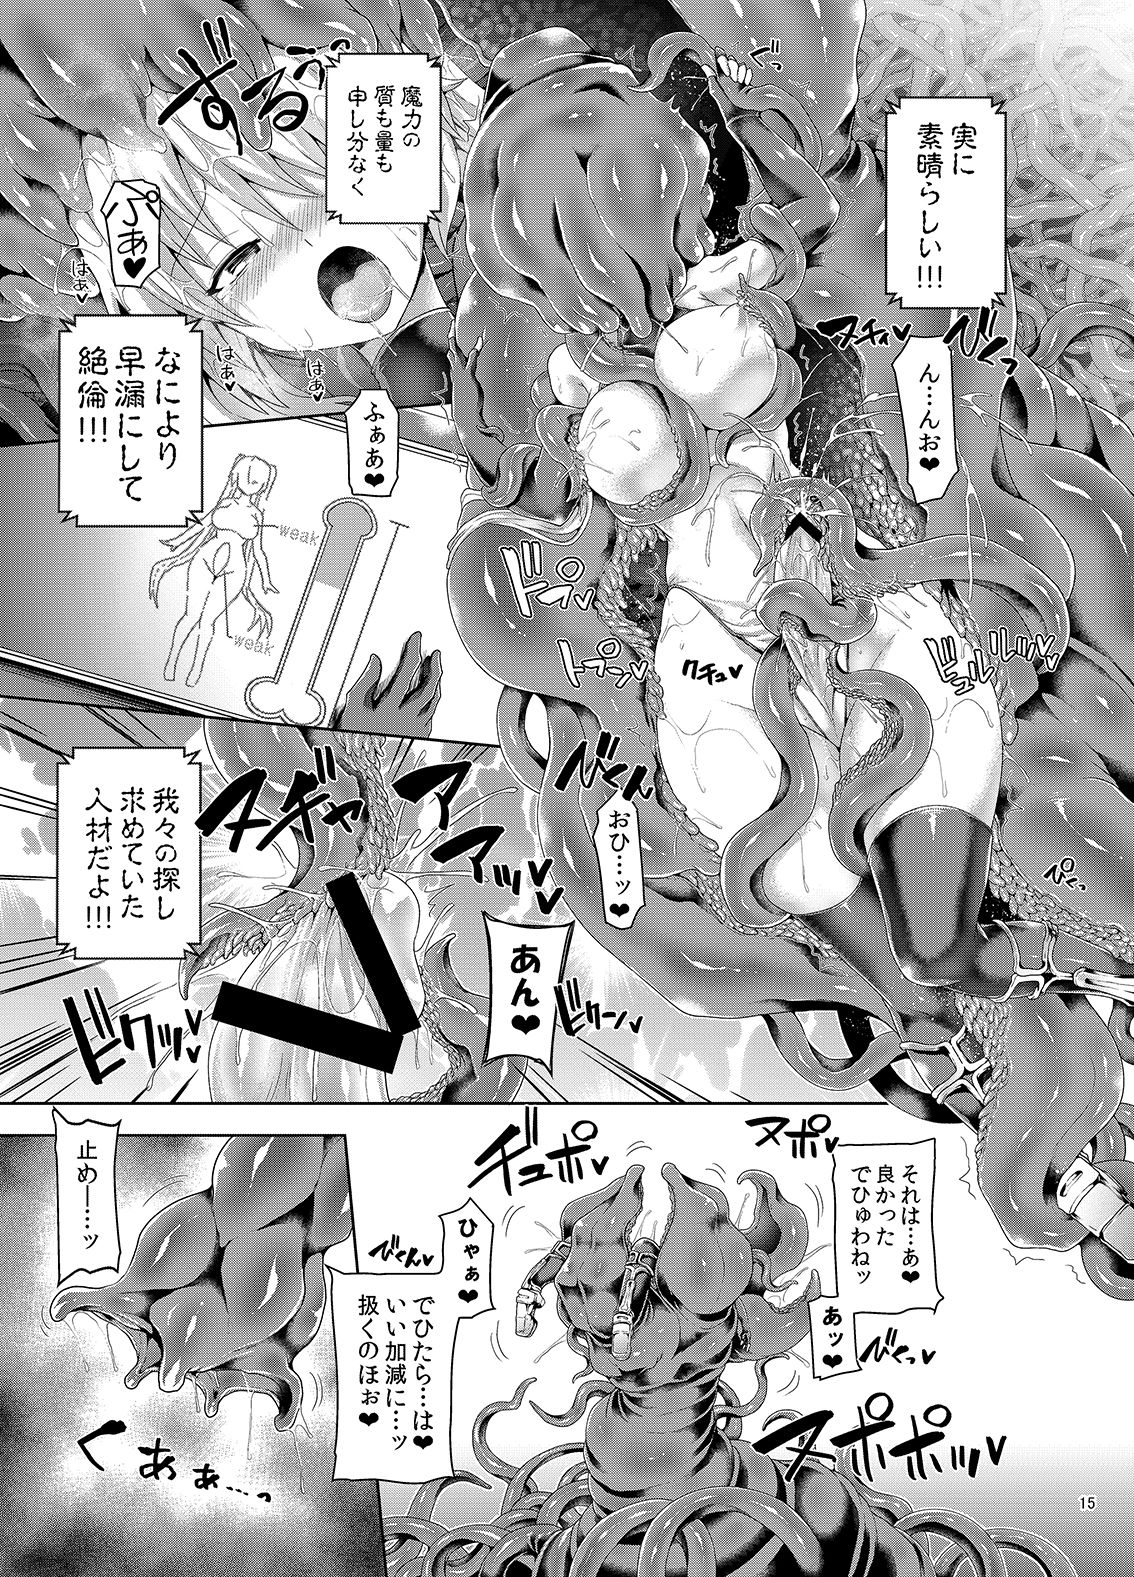 [Pamunosu (Koppamu)] Zetsurin Hishou Spermax Niku Goku Shokubutsu no Wana [Digital] [ぱむの巣 (こっぱむ)] 絶倫飛翔スペルマックス 肉獄植物の罠 [DL版]